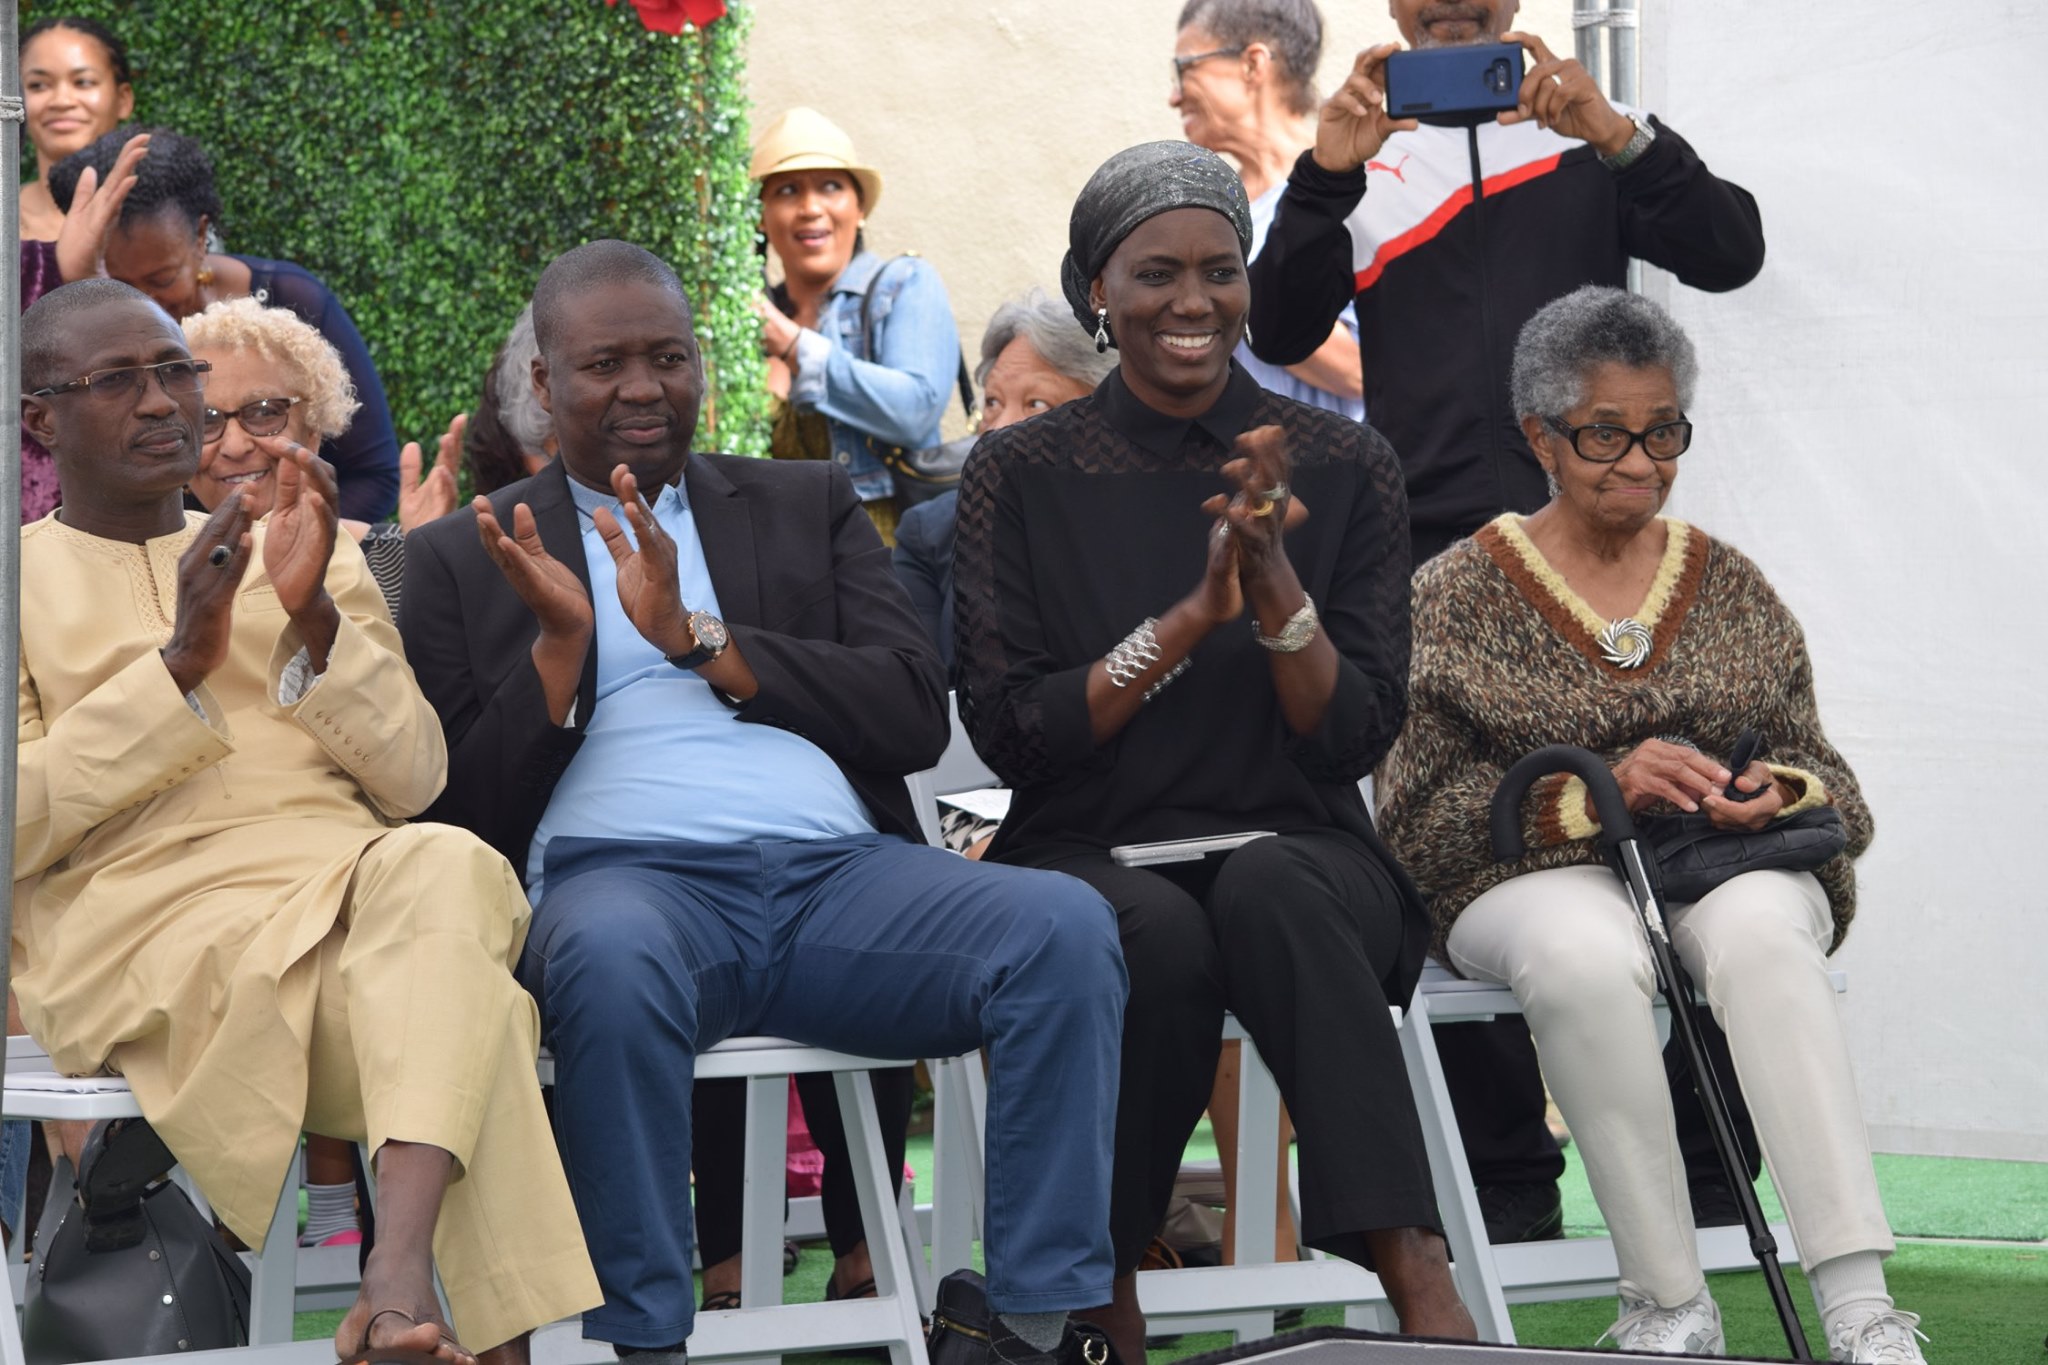 The Alkebulan Cultural Center Presents Kindred to its Senegal Delegation